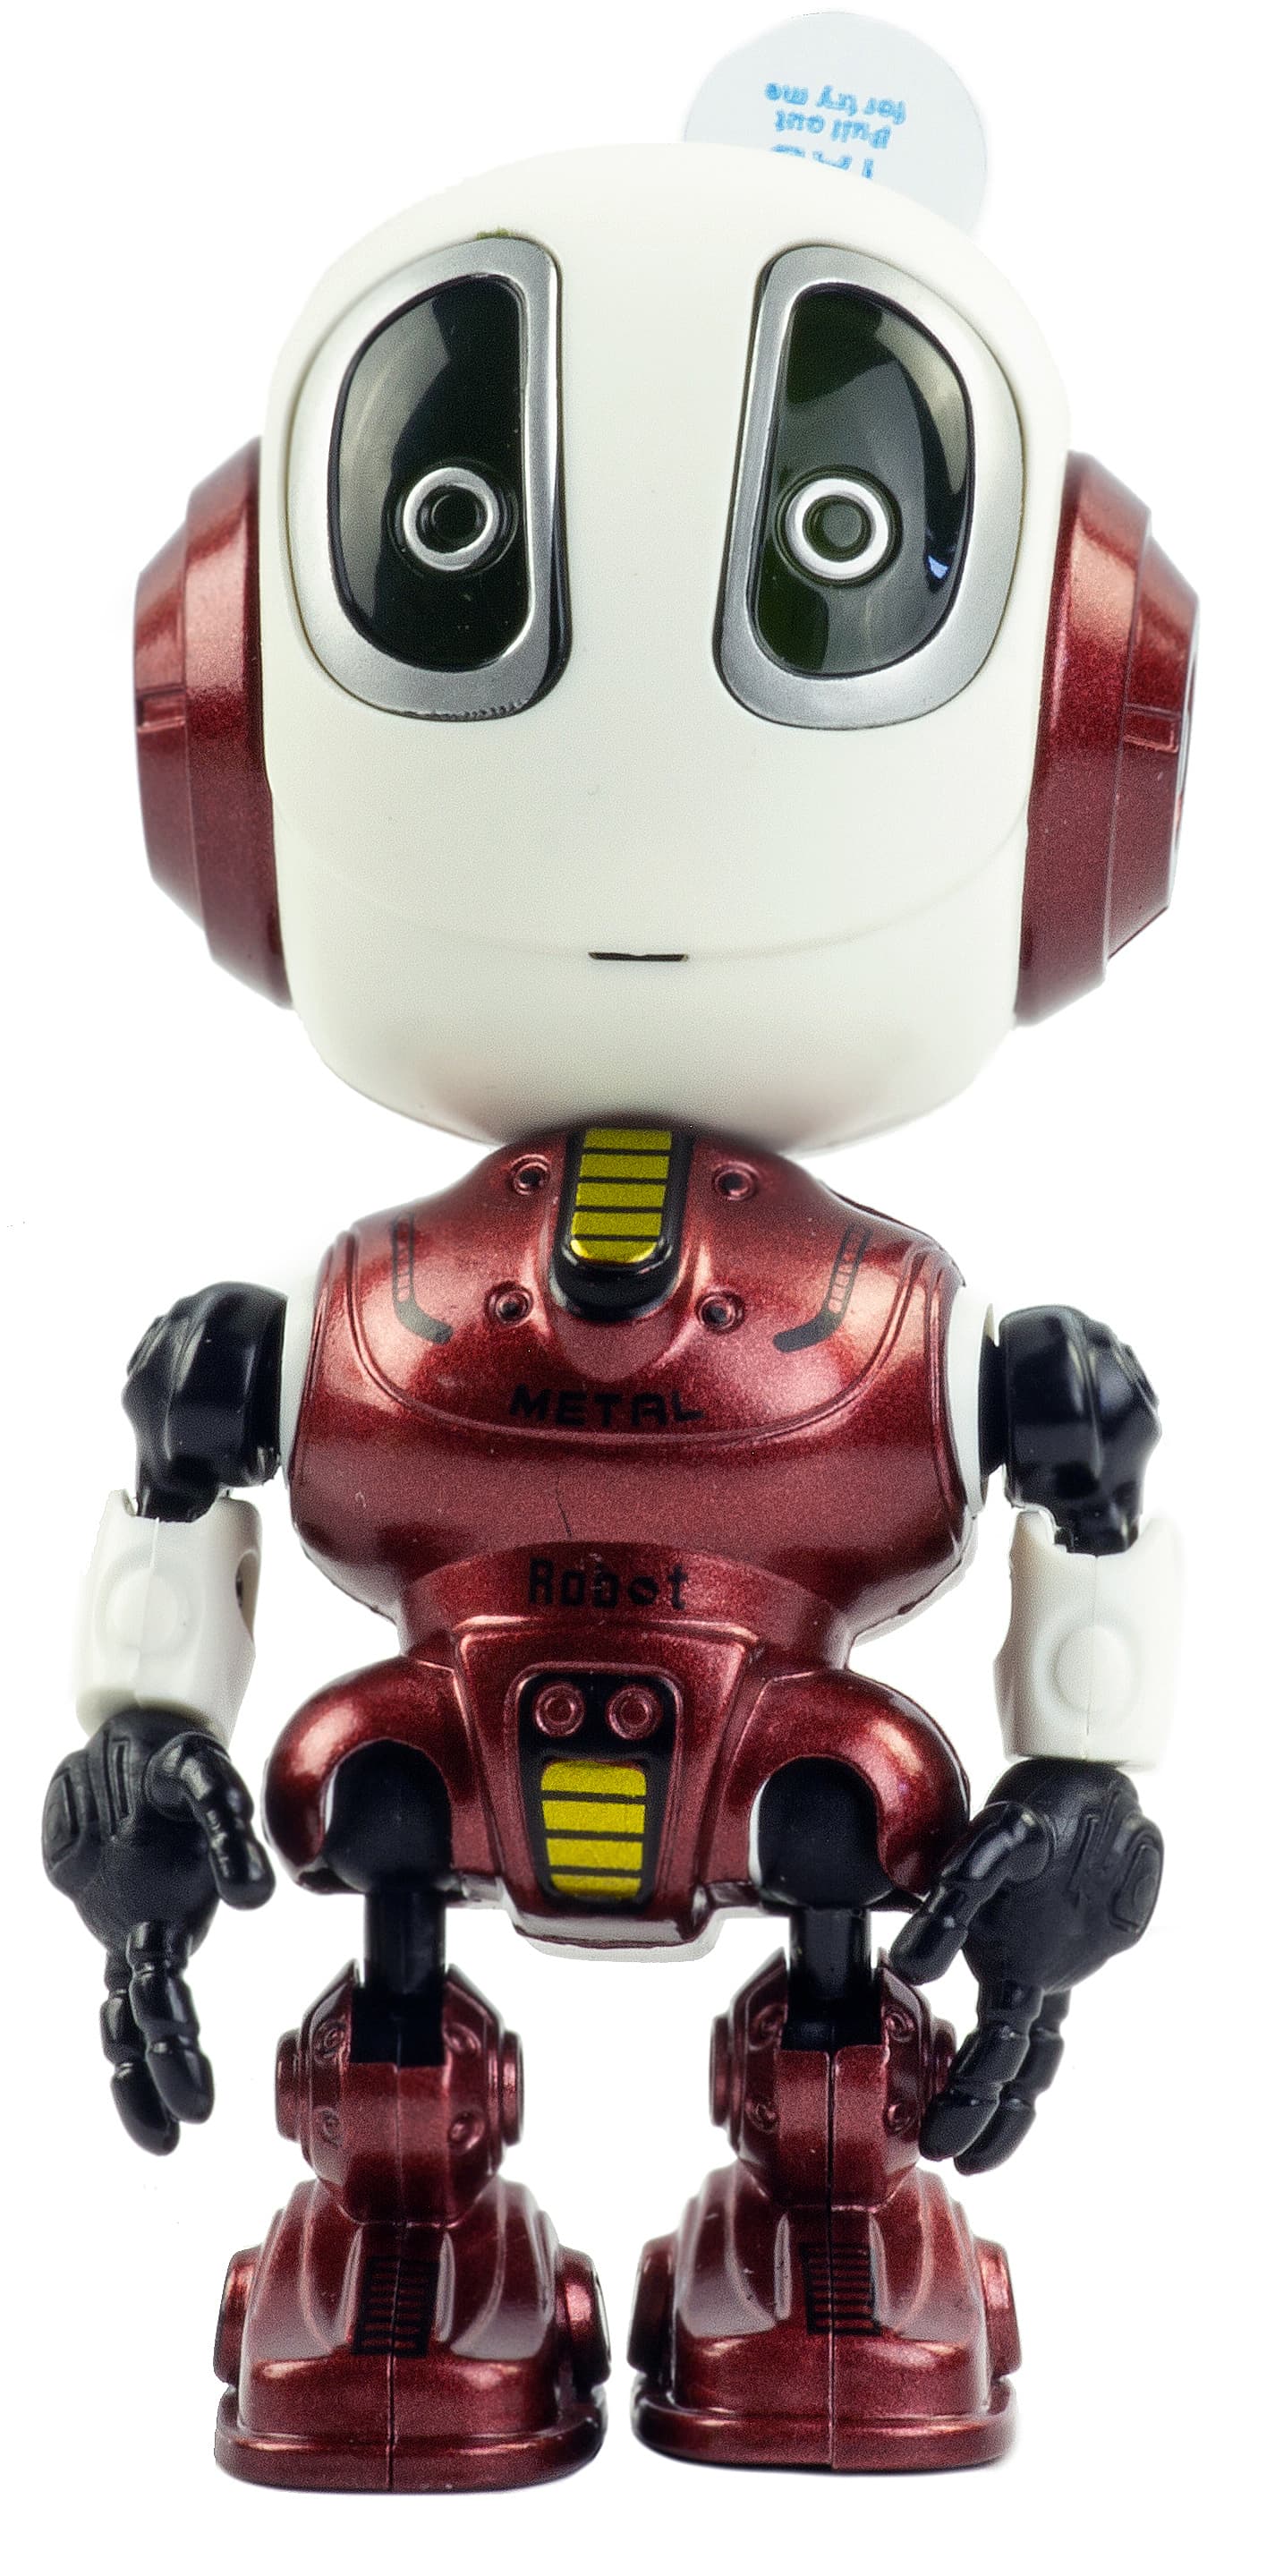 Металлический робот интерактивный 12 см., световые и звуковые эффекты, MY66-Q2202 / Микс